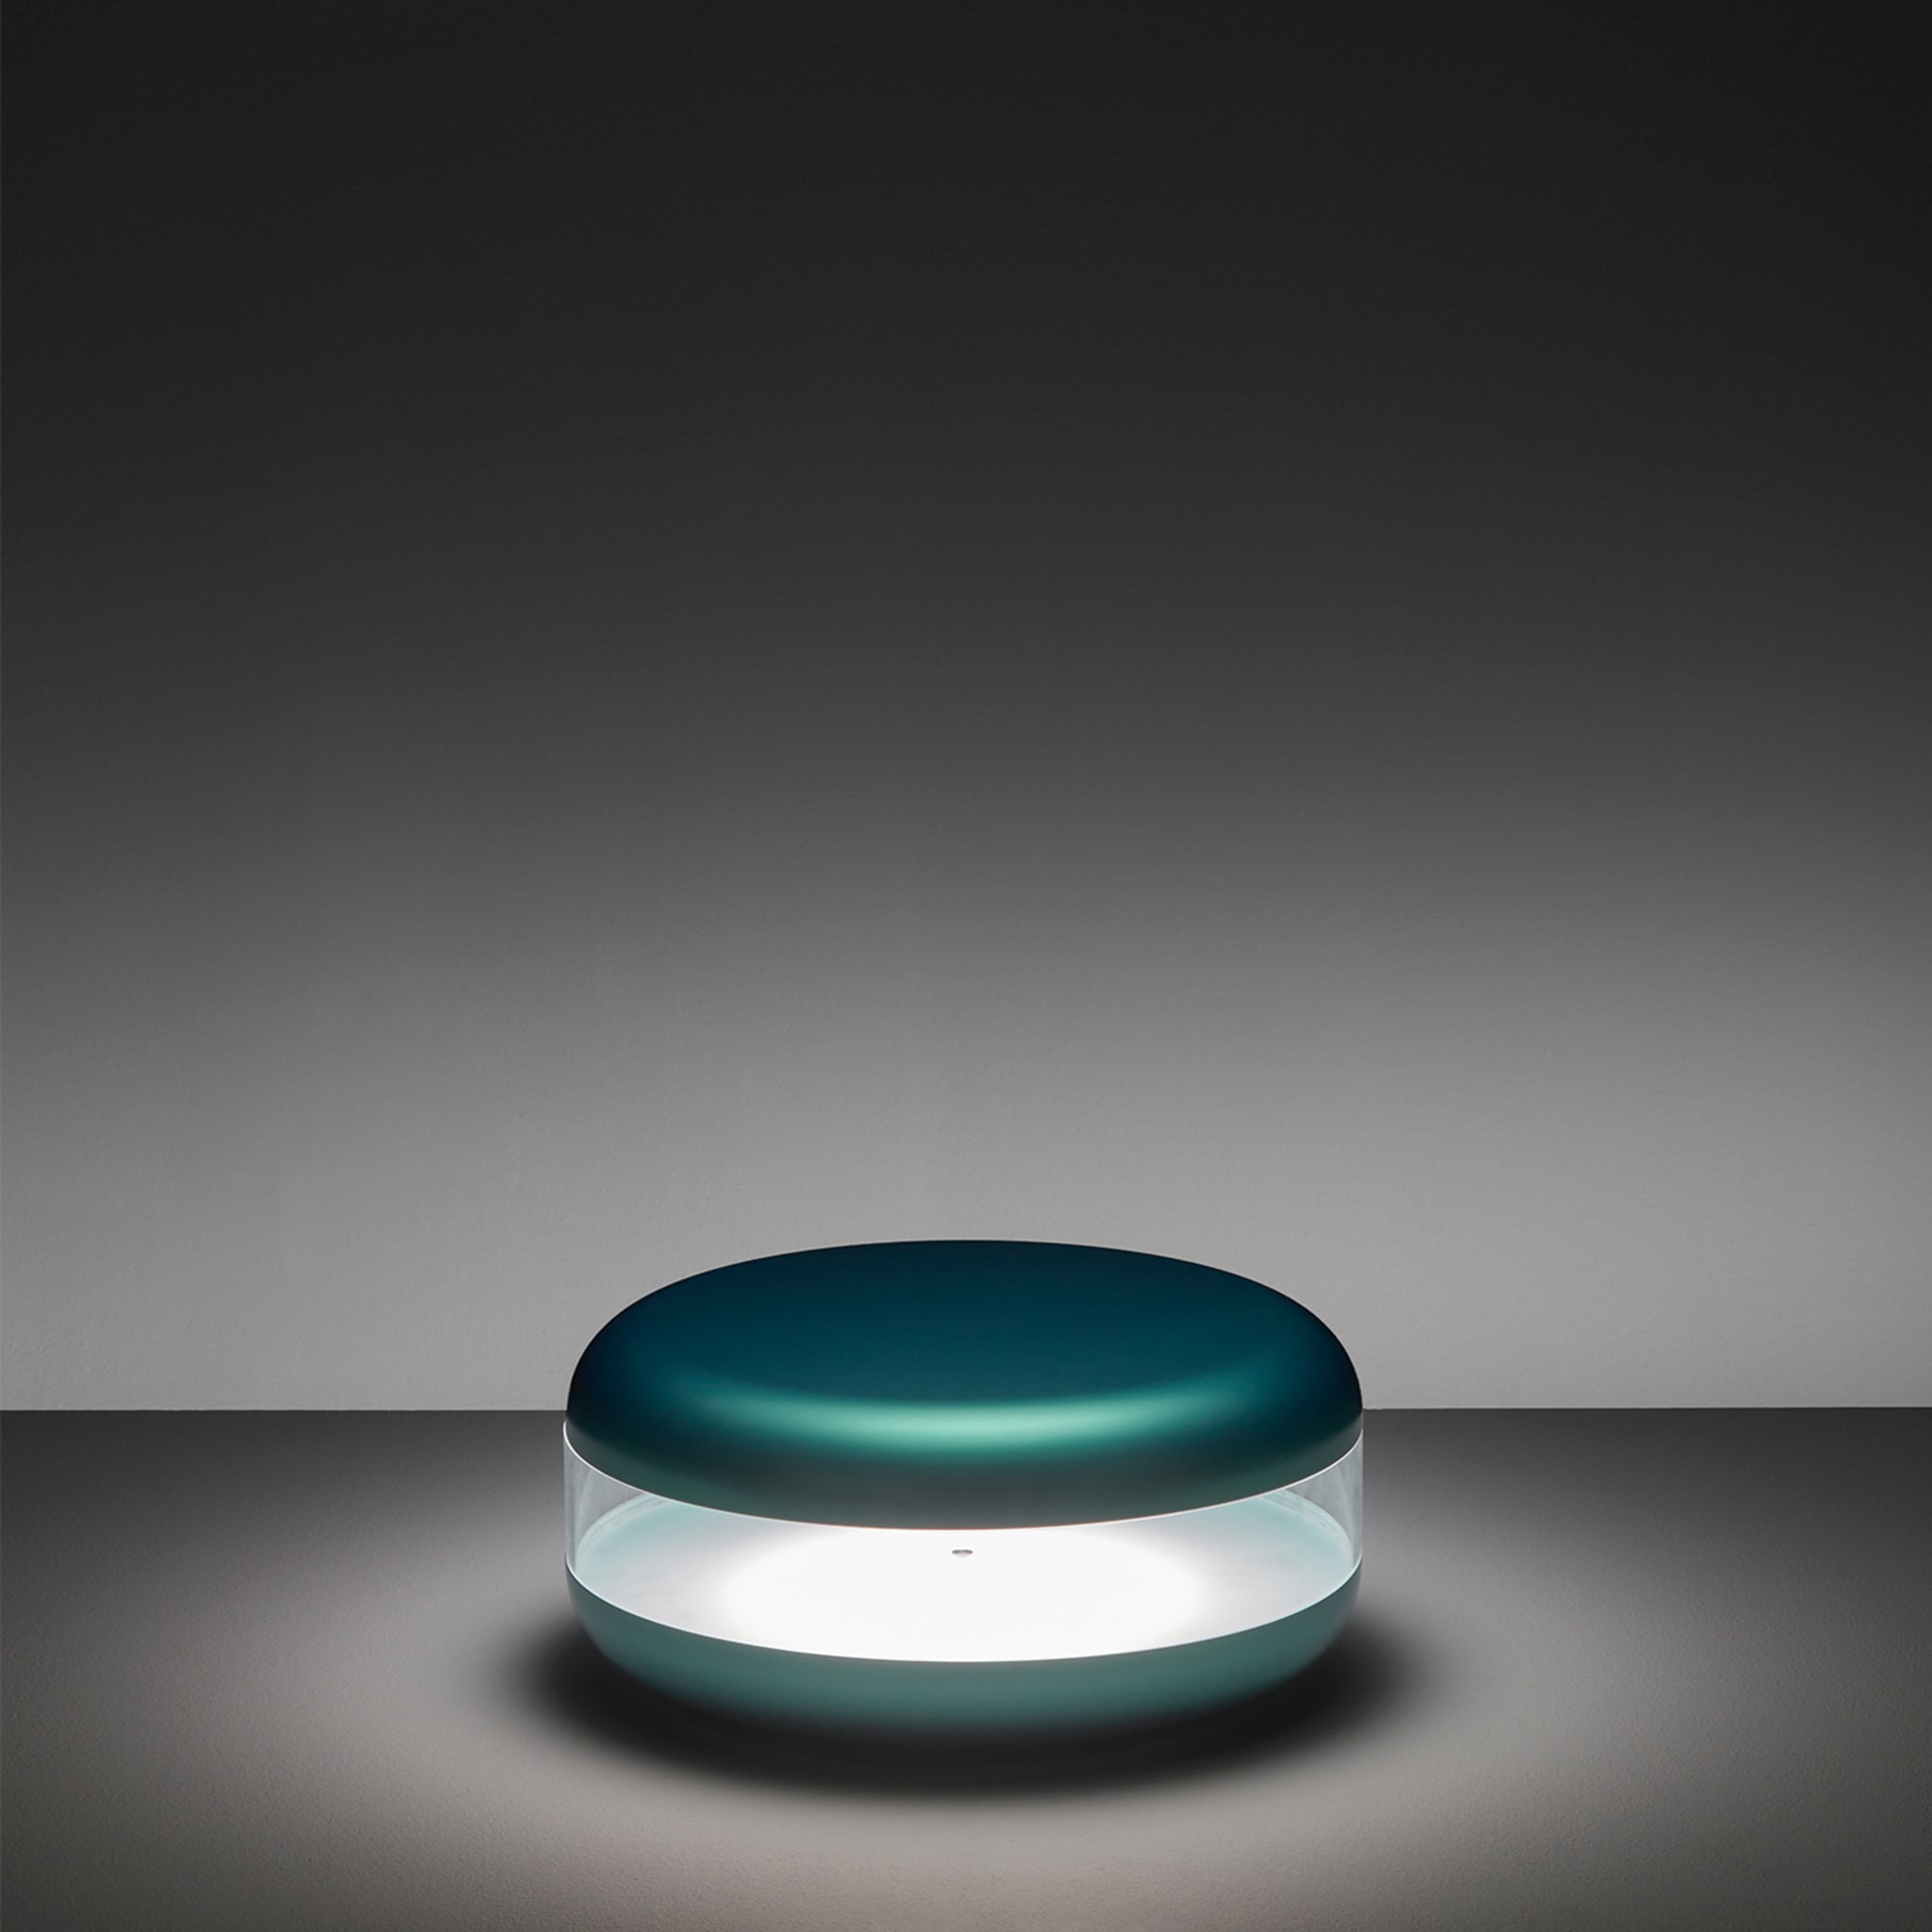 Lampe de table Macaron Green par Parisotto + Formenton - Vue alternative 1